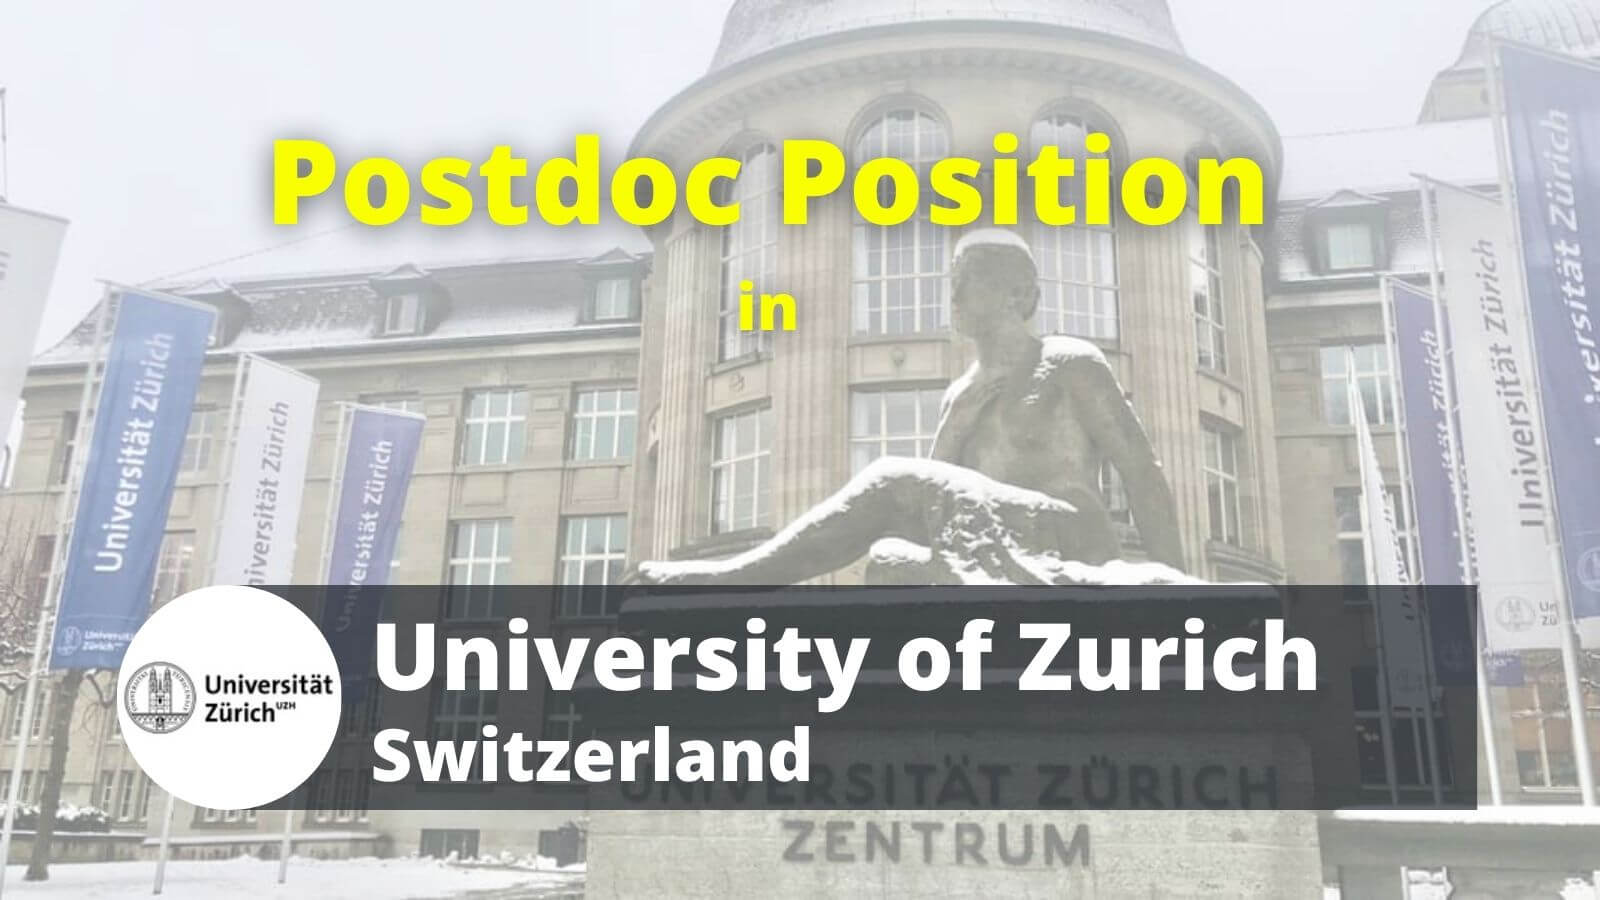 Postdoc Researcher Position in University of Zurich UZH Switzerland